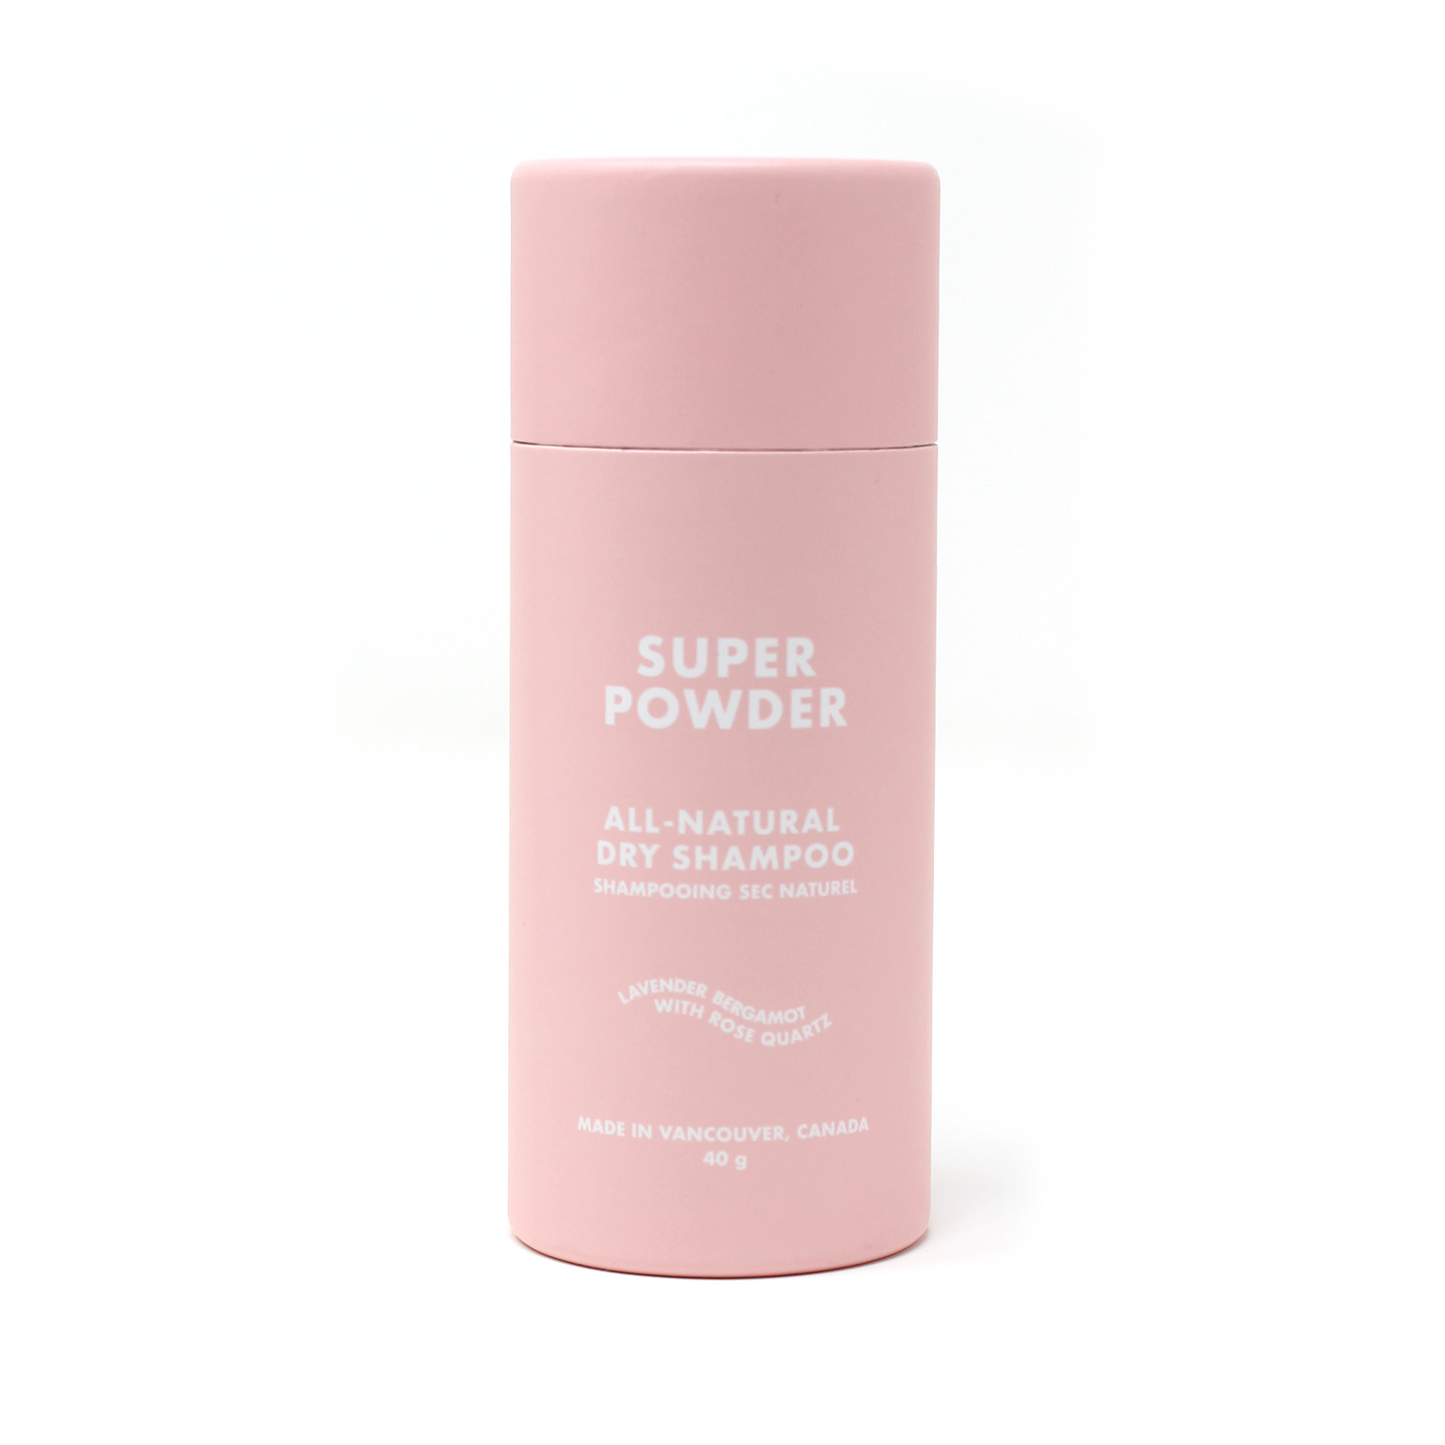 Super Powder Dry Shampoo | Original